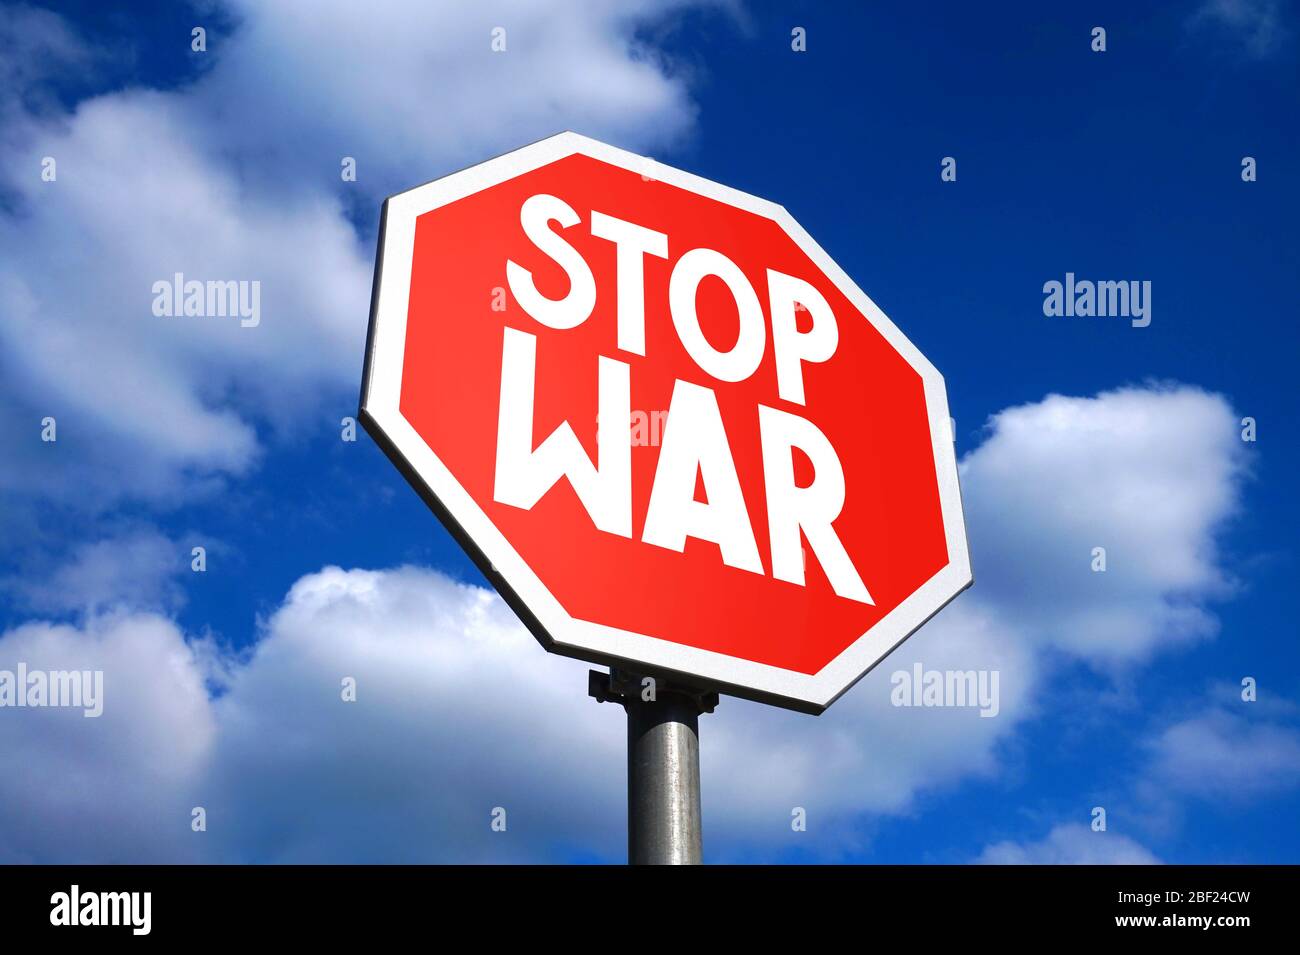 Stop war sign Stock Photo